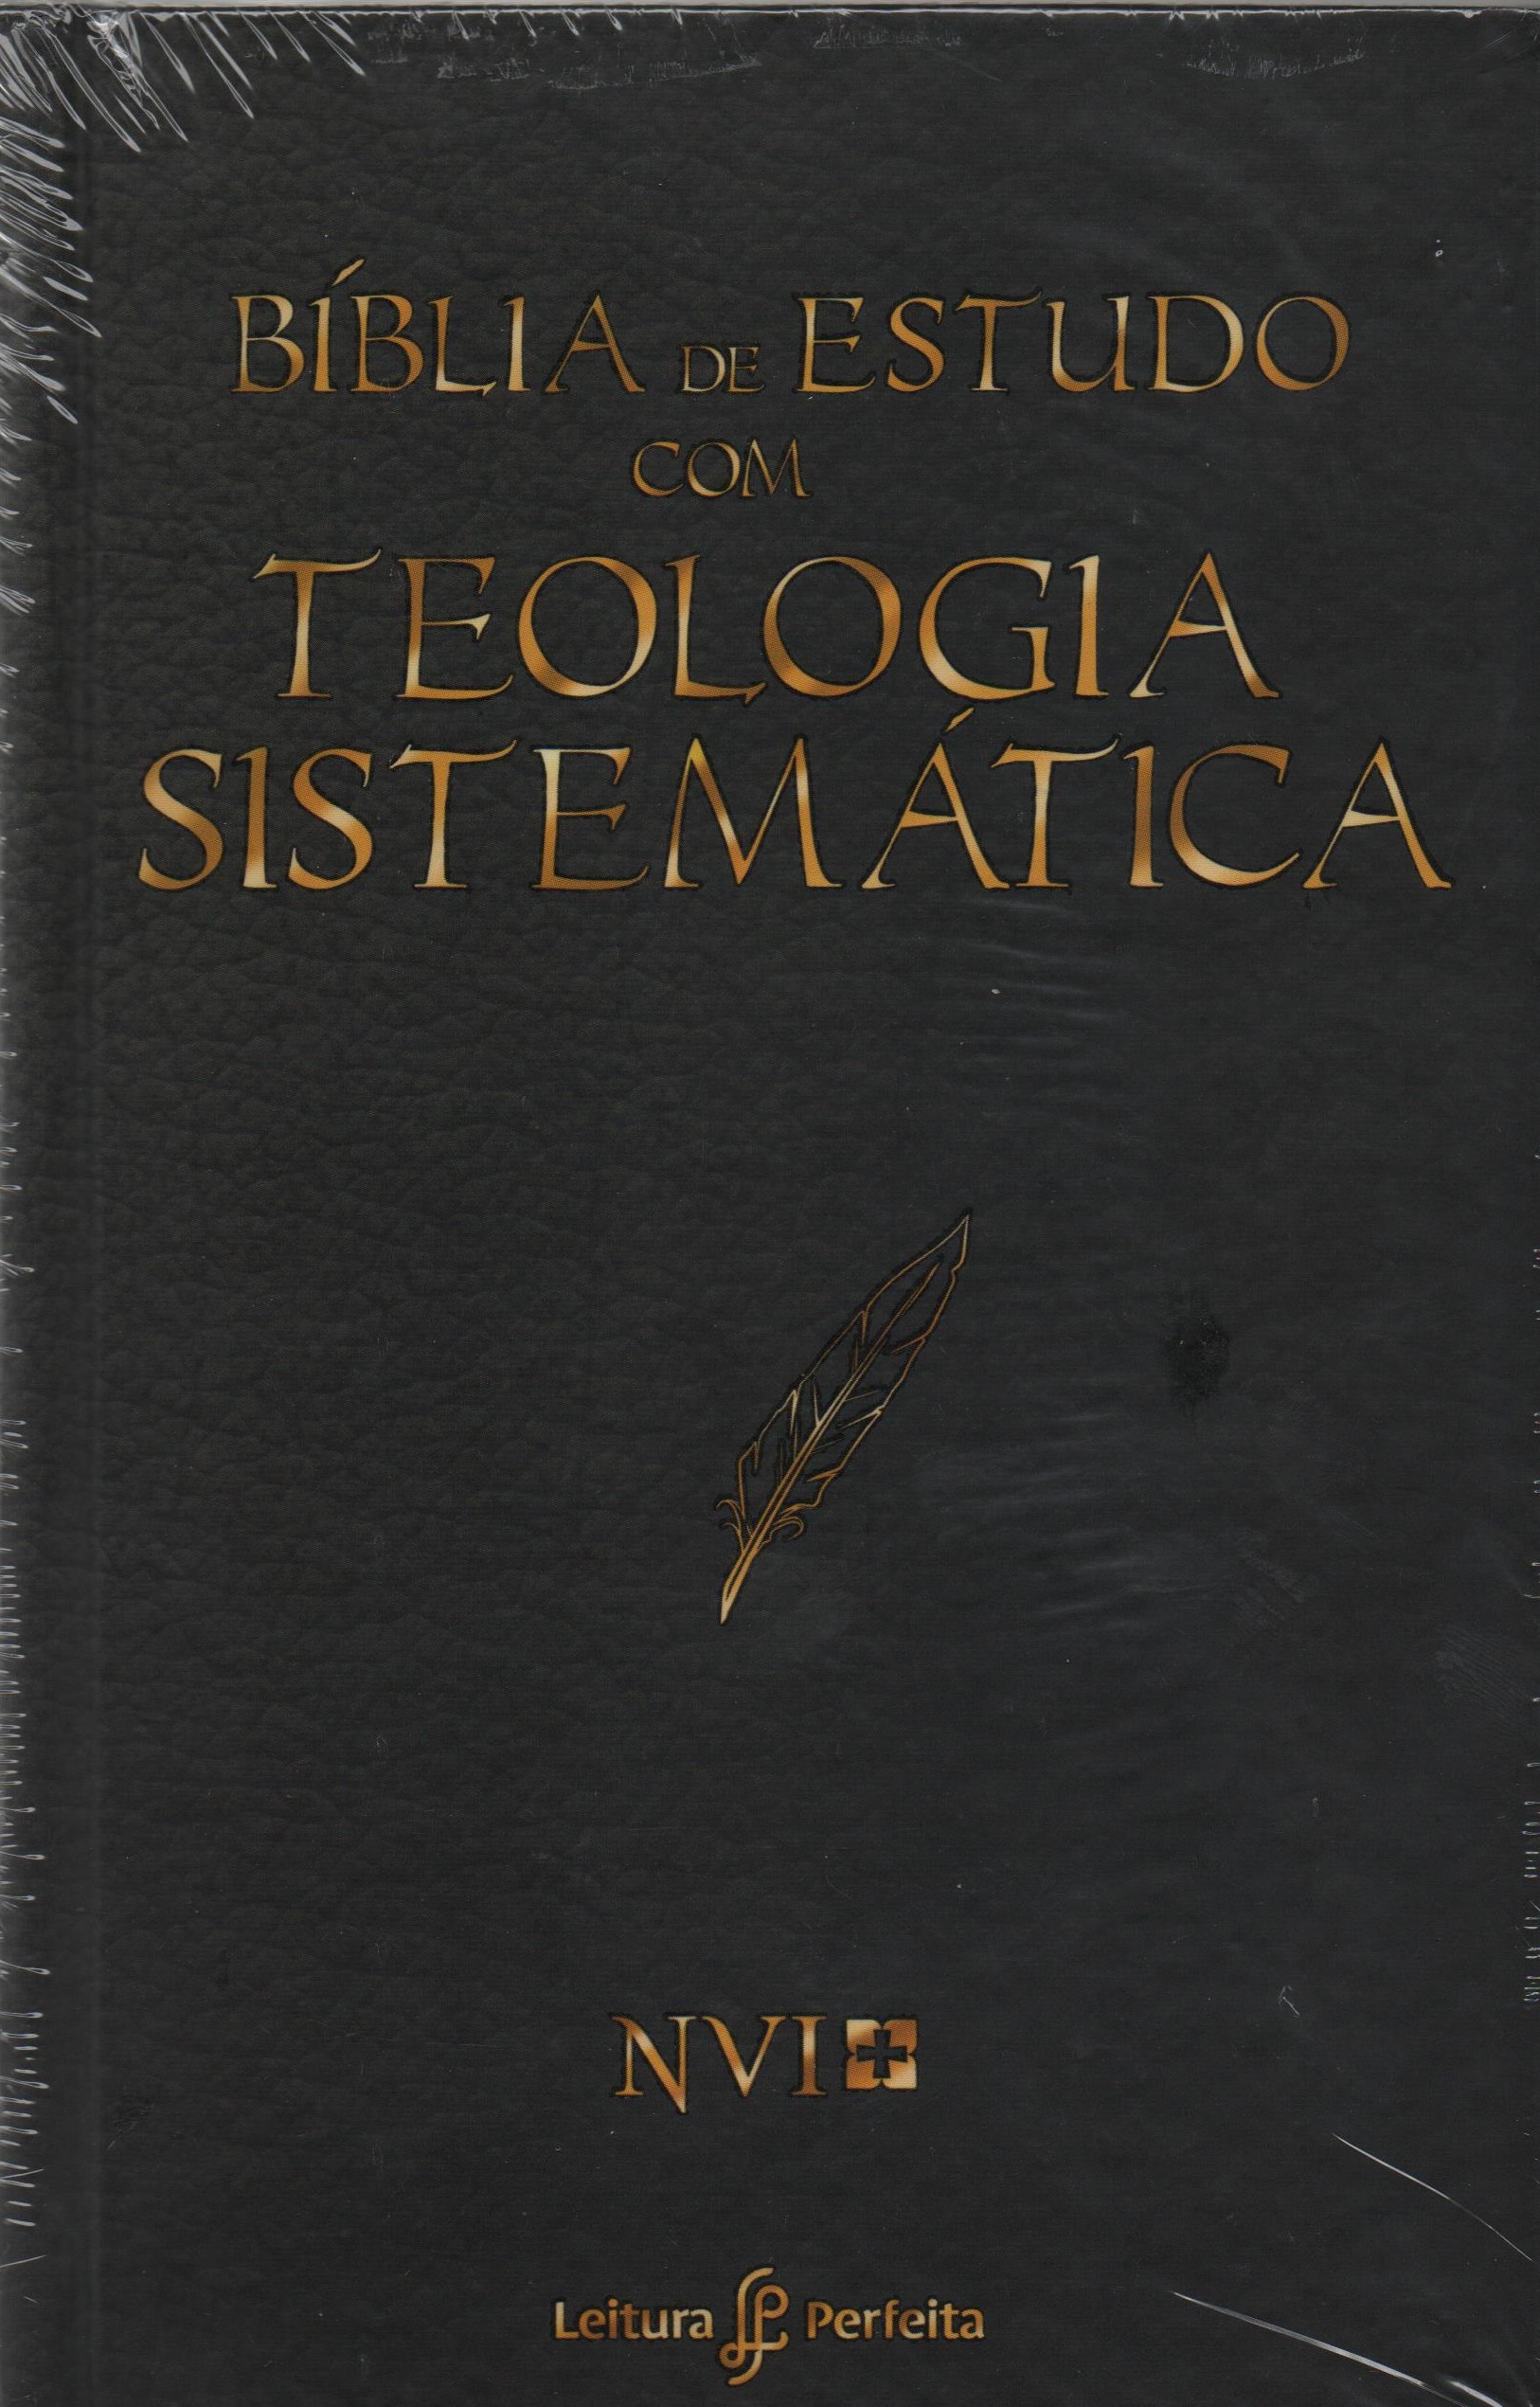 Bíblia de estudo com teologia sistemática